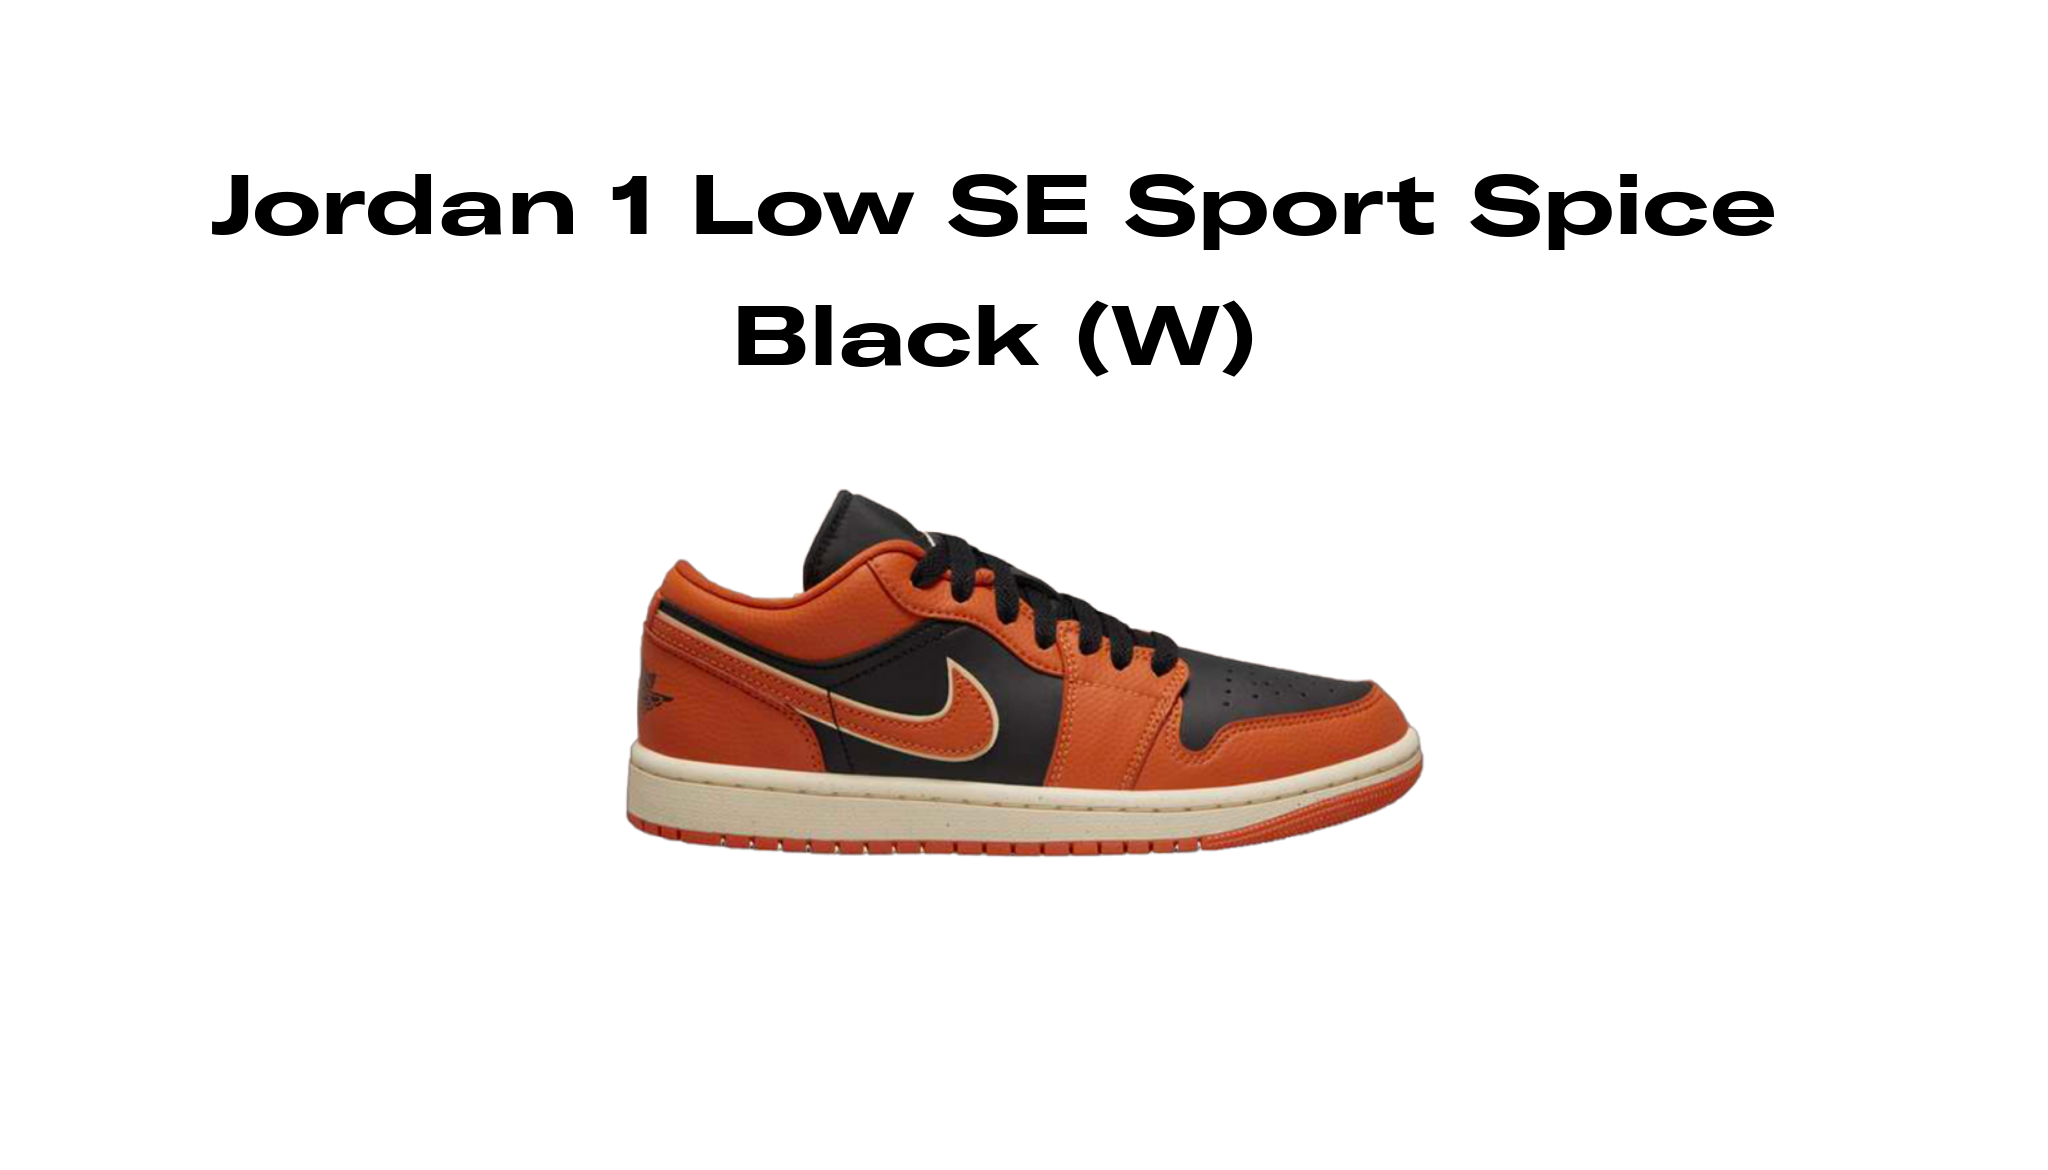 Jordan 1 Low SE Sport Spice Black (W), Raffles and Release Date | Sole ...